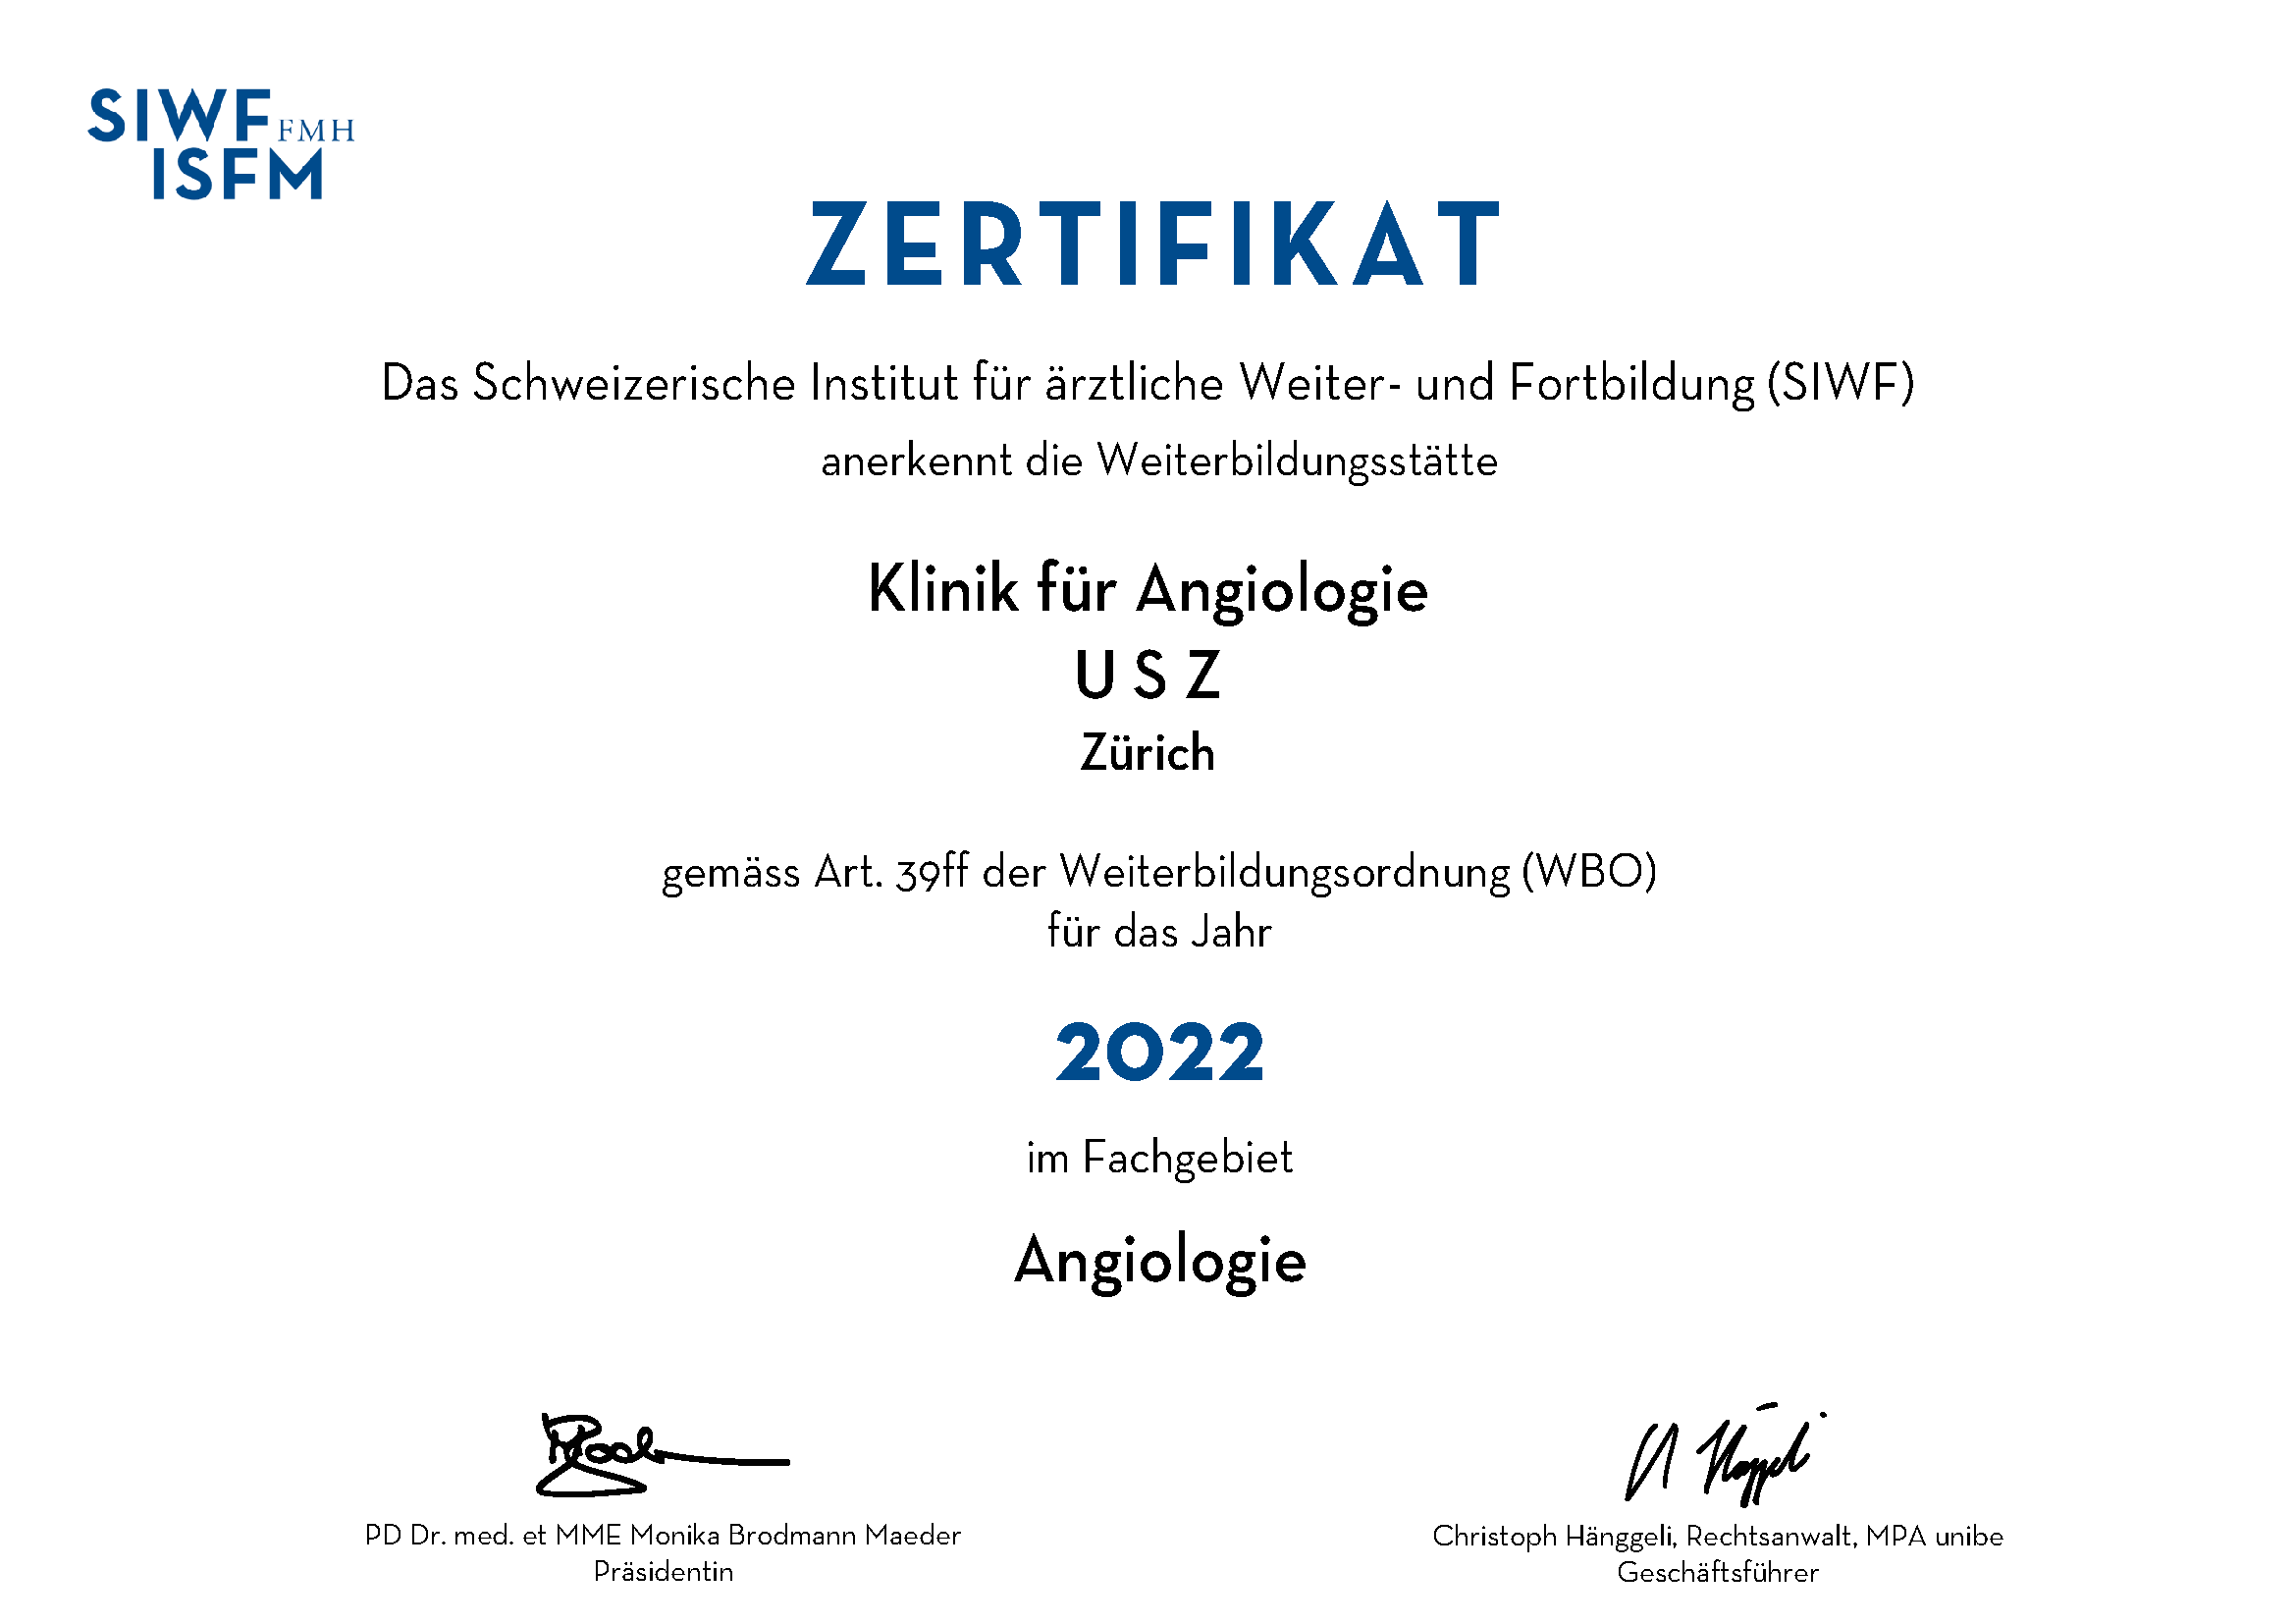 Zertifikat - Das SIWF anerkennt die Weiterbildungsstätte Klinik für Angiologie für das Jahr 2020 im Fachgebiet Angiologie.